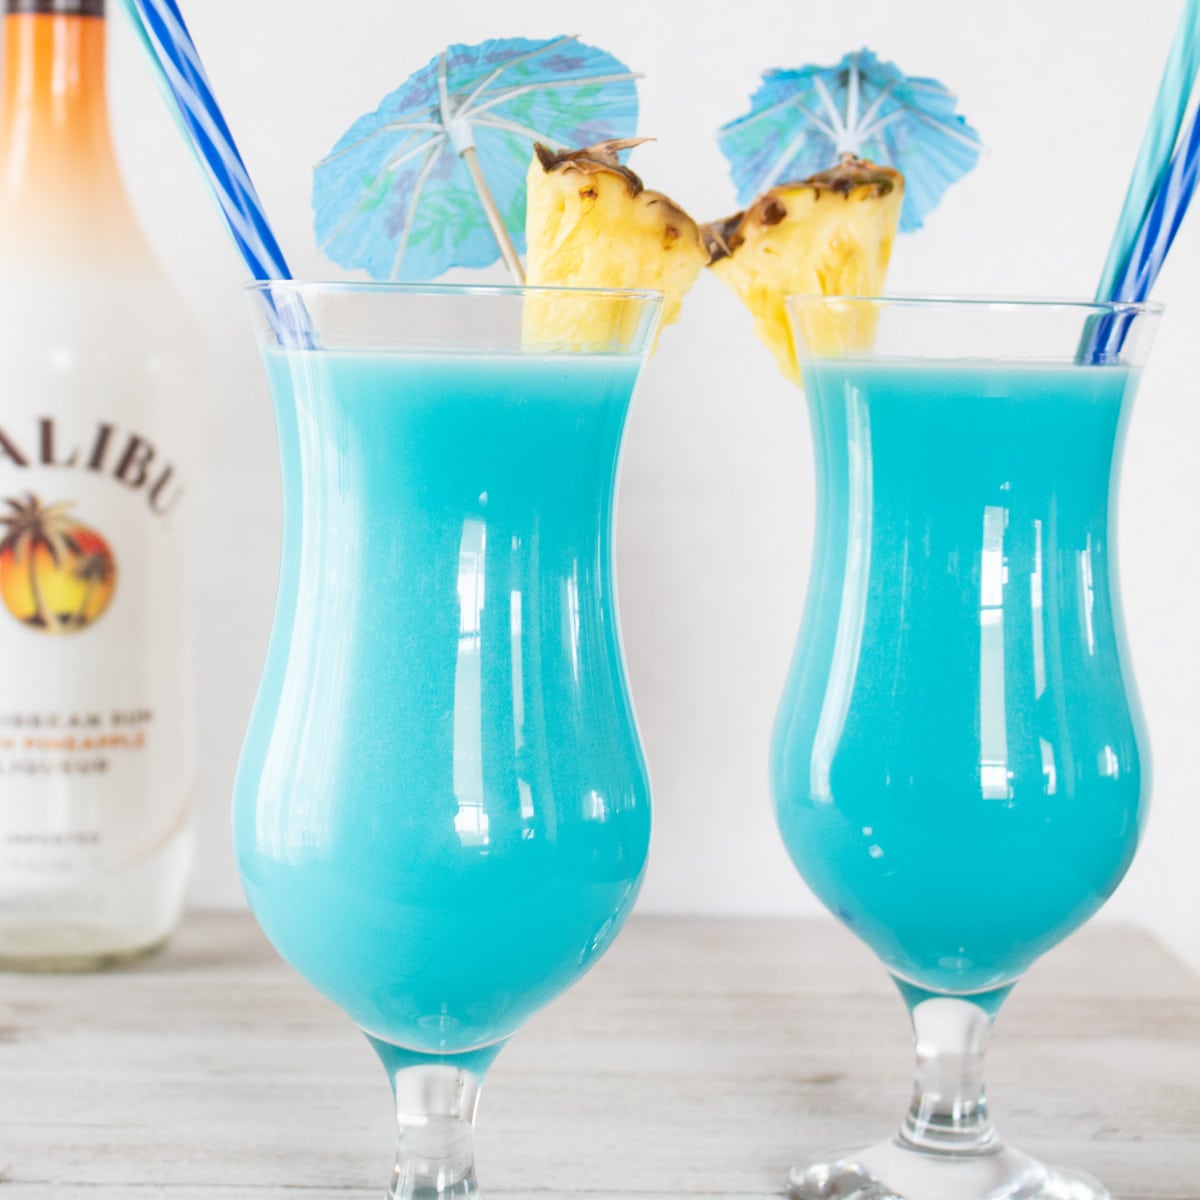 Замразени сини хавайски коктейли, сервирани в чаши ураган с гарнитура от ананас.